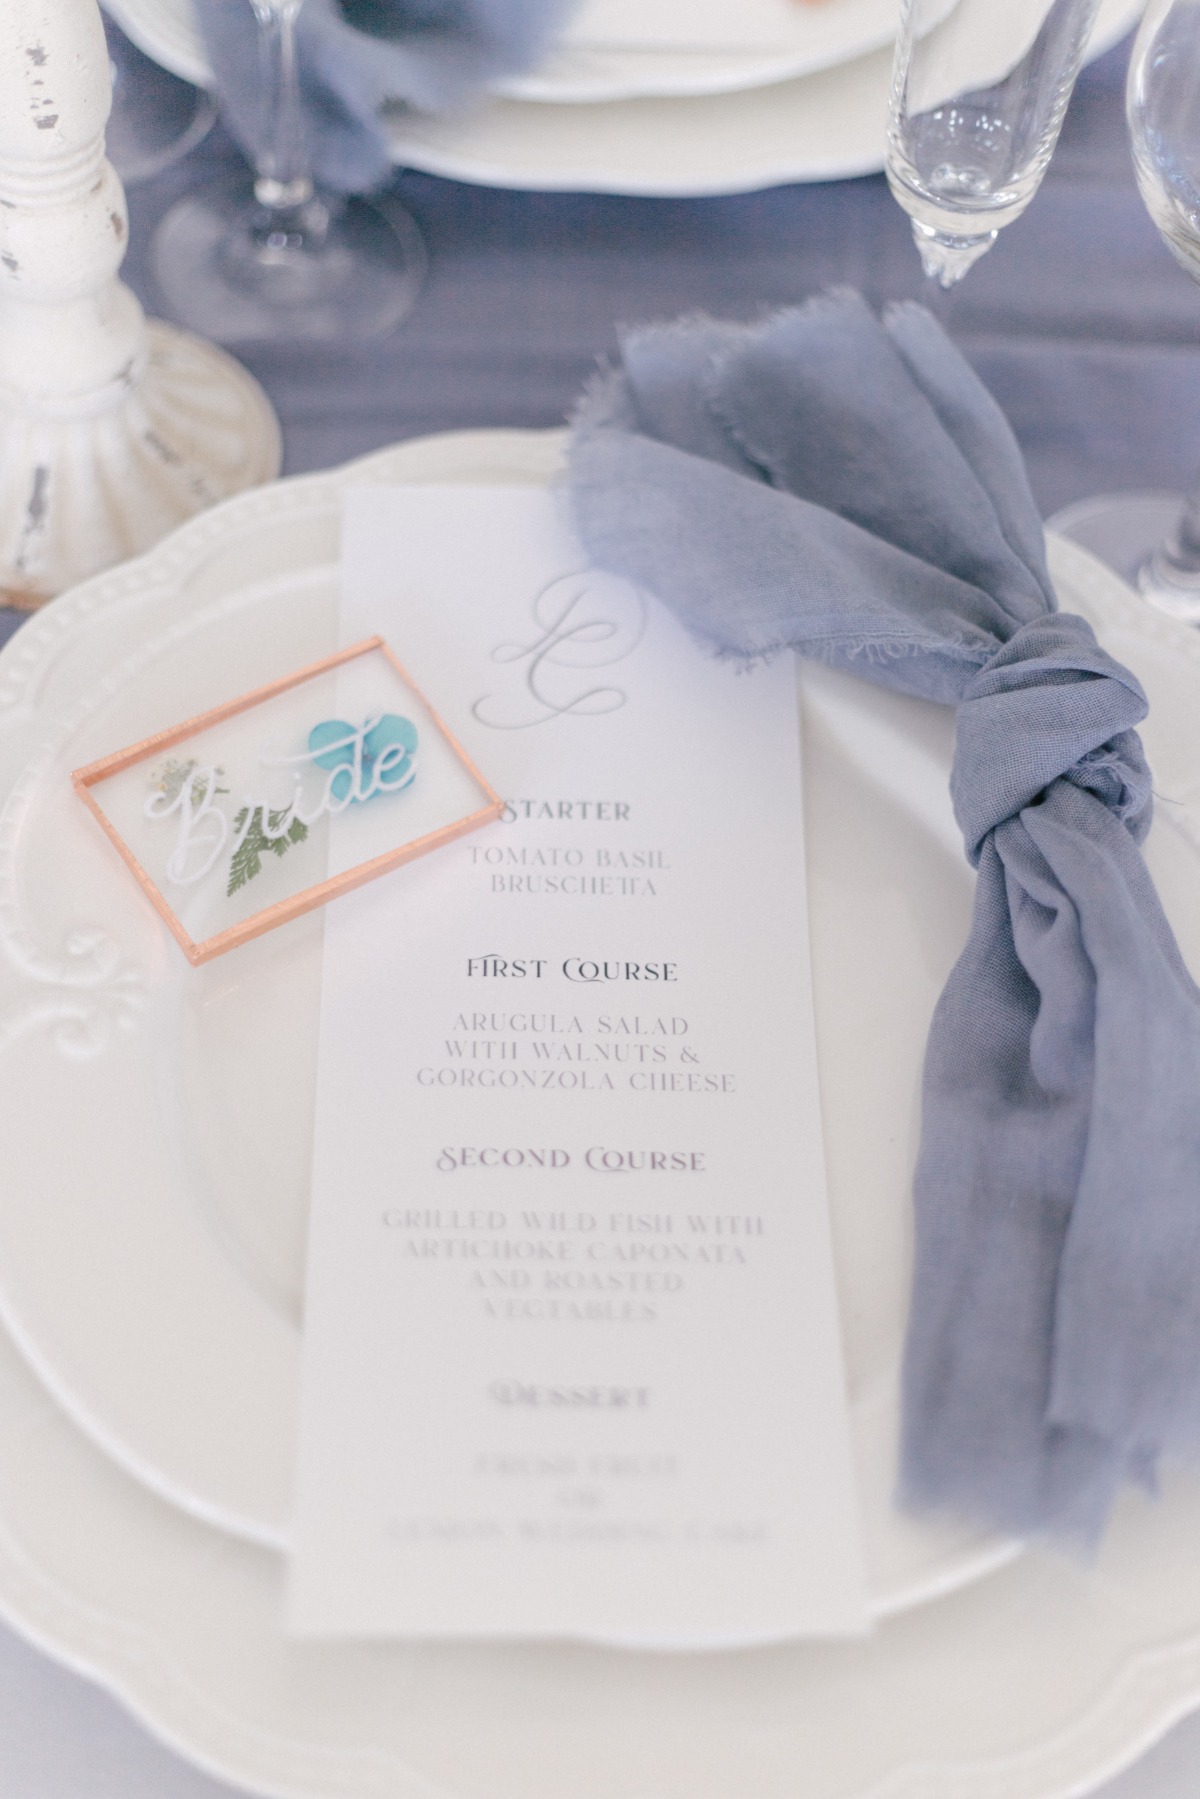 wedding menu with blue napkins